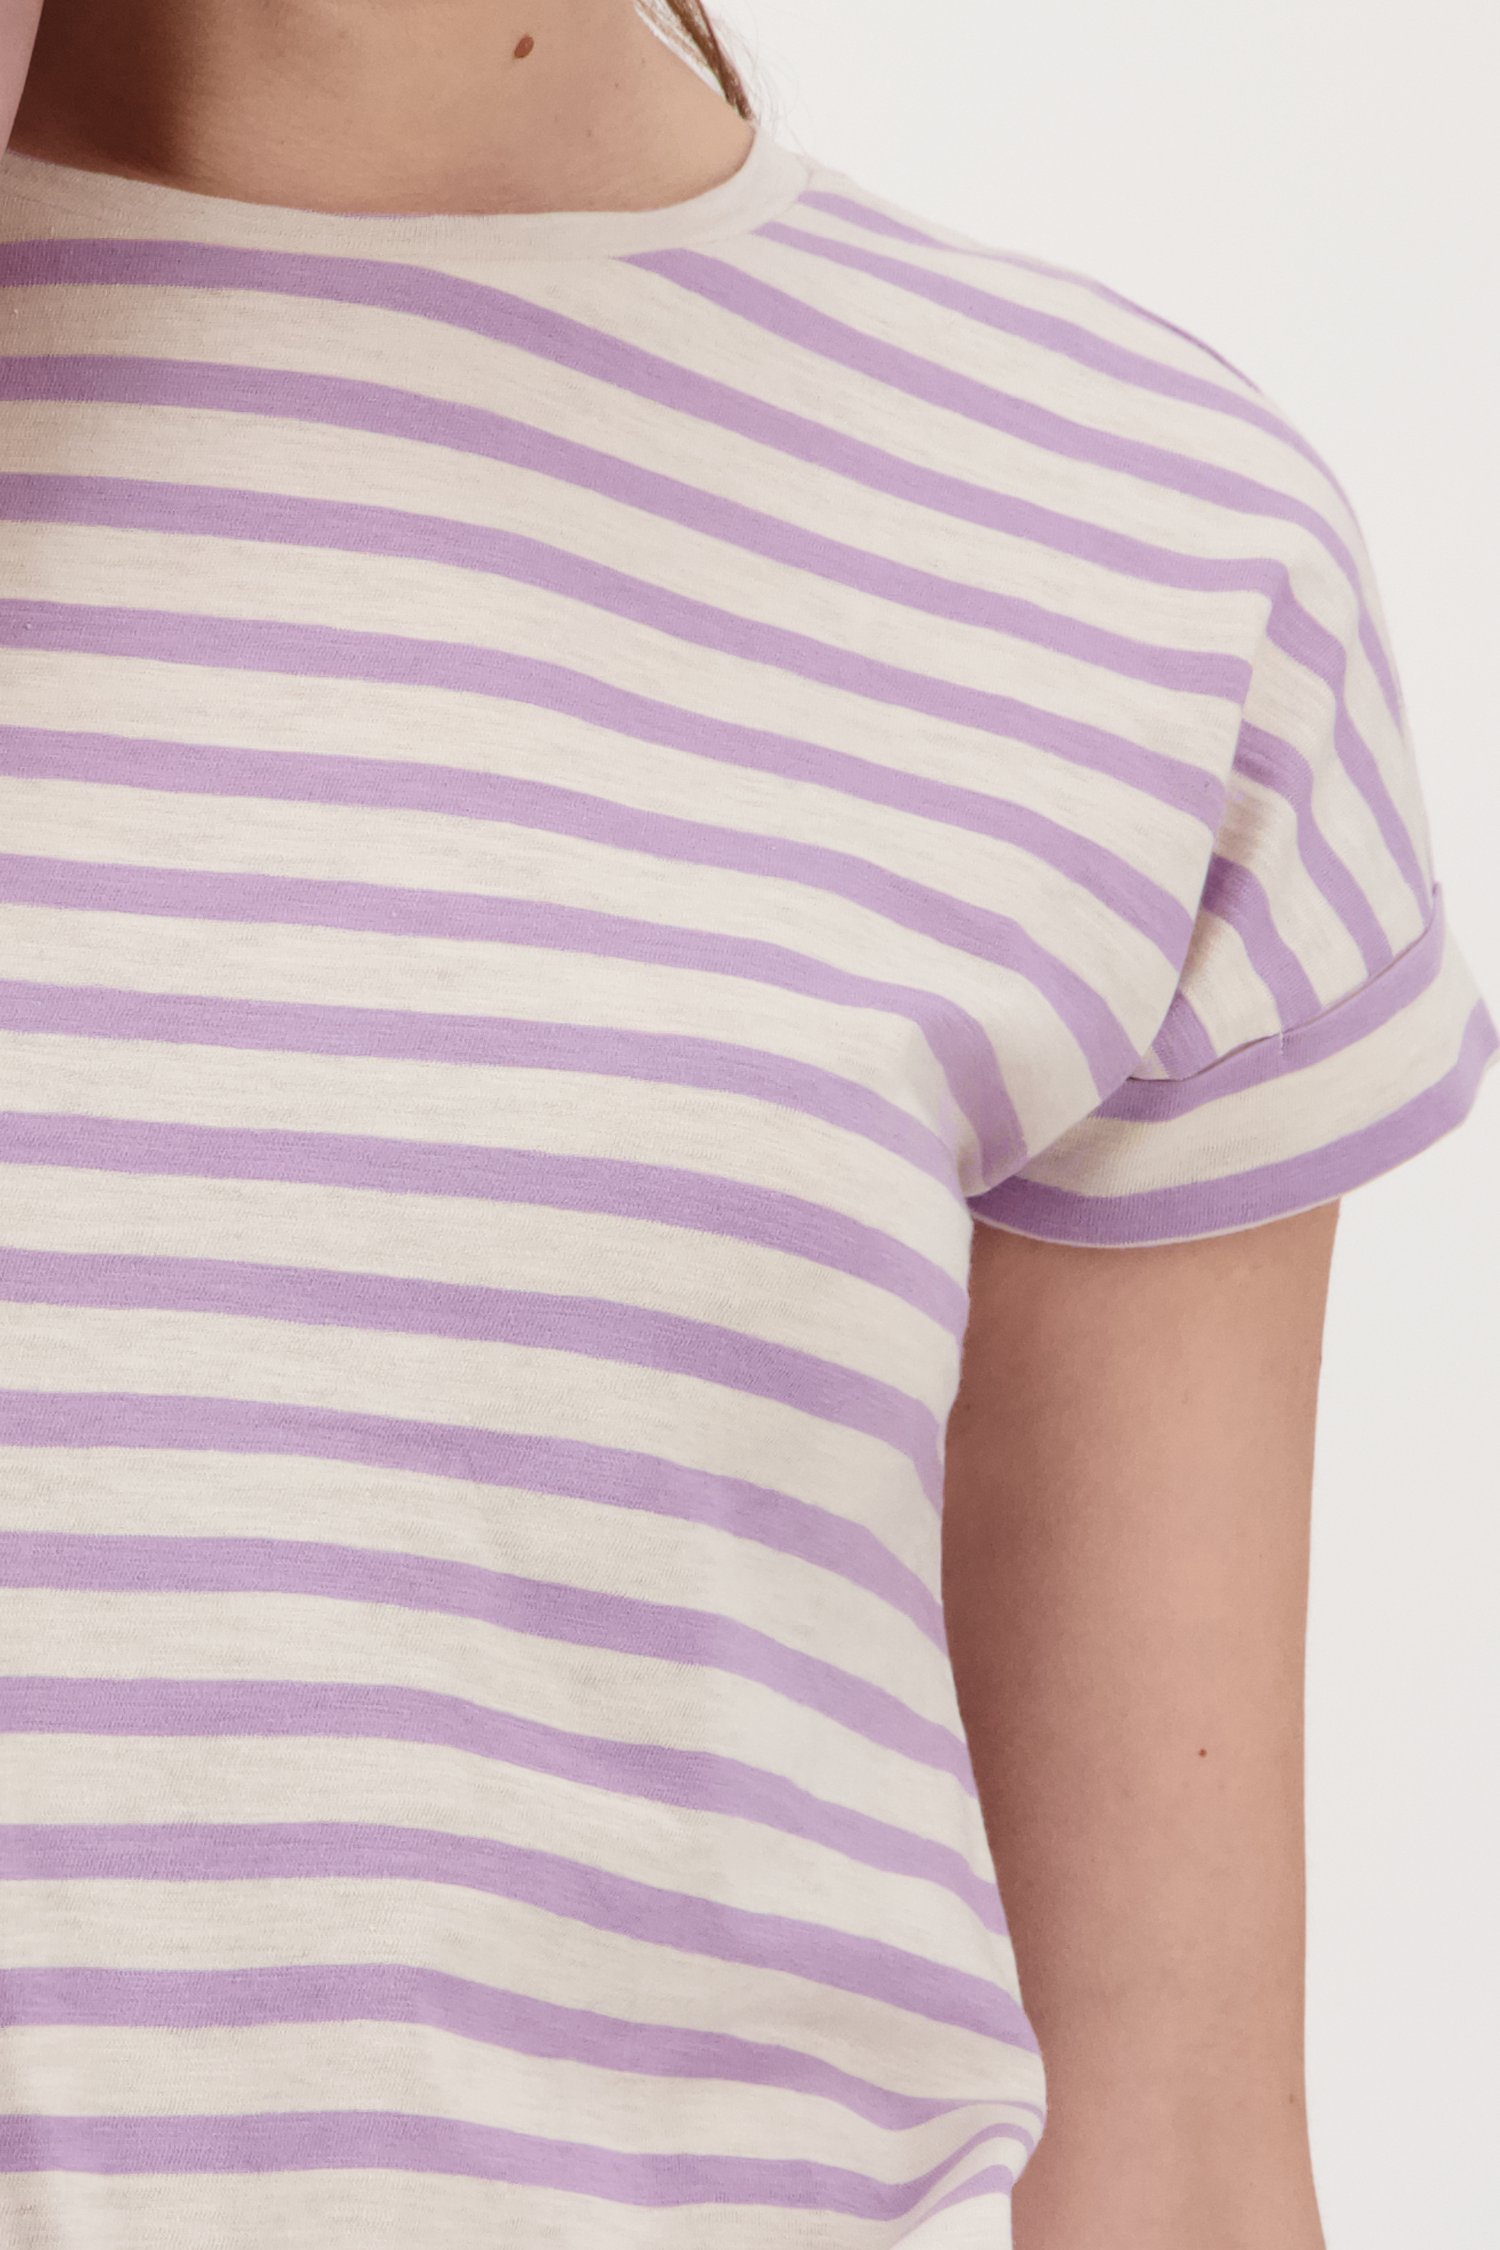 T-shirt rayé en écru et violet clair de Liberty Island pour Femmes